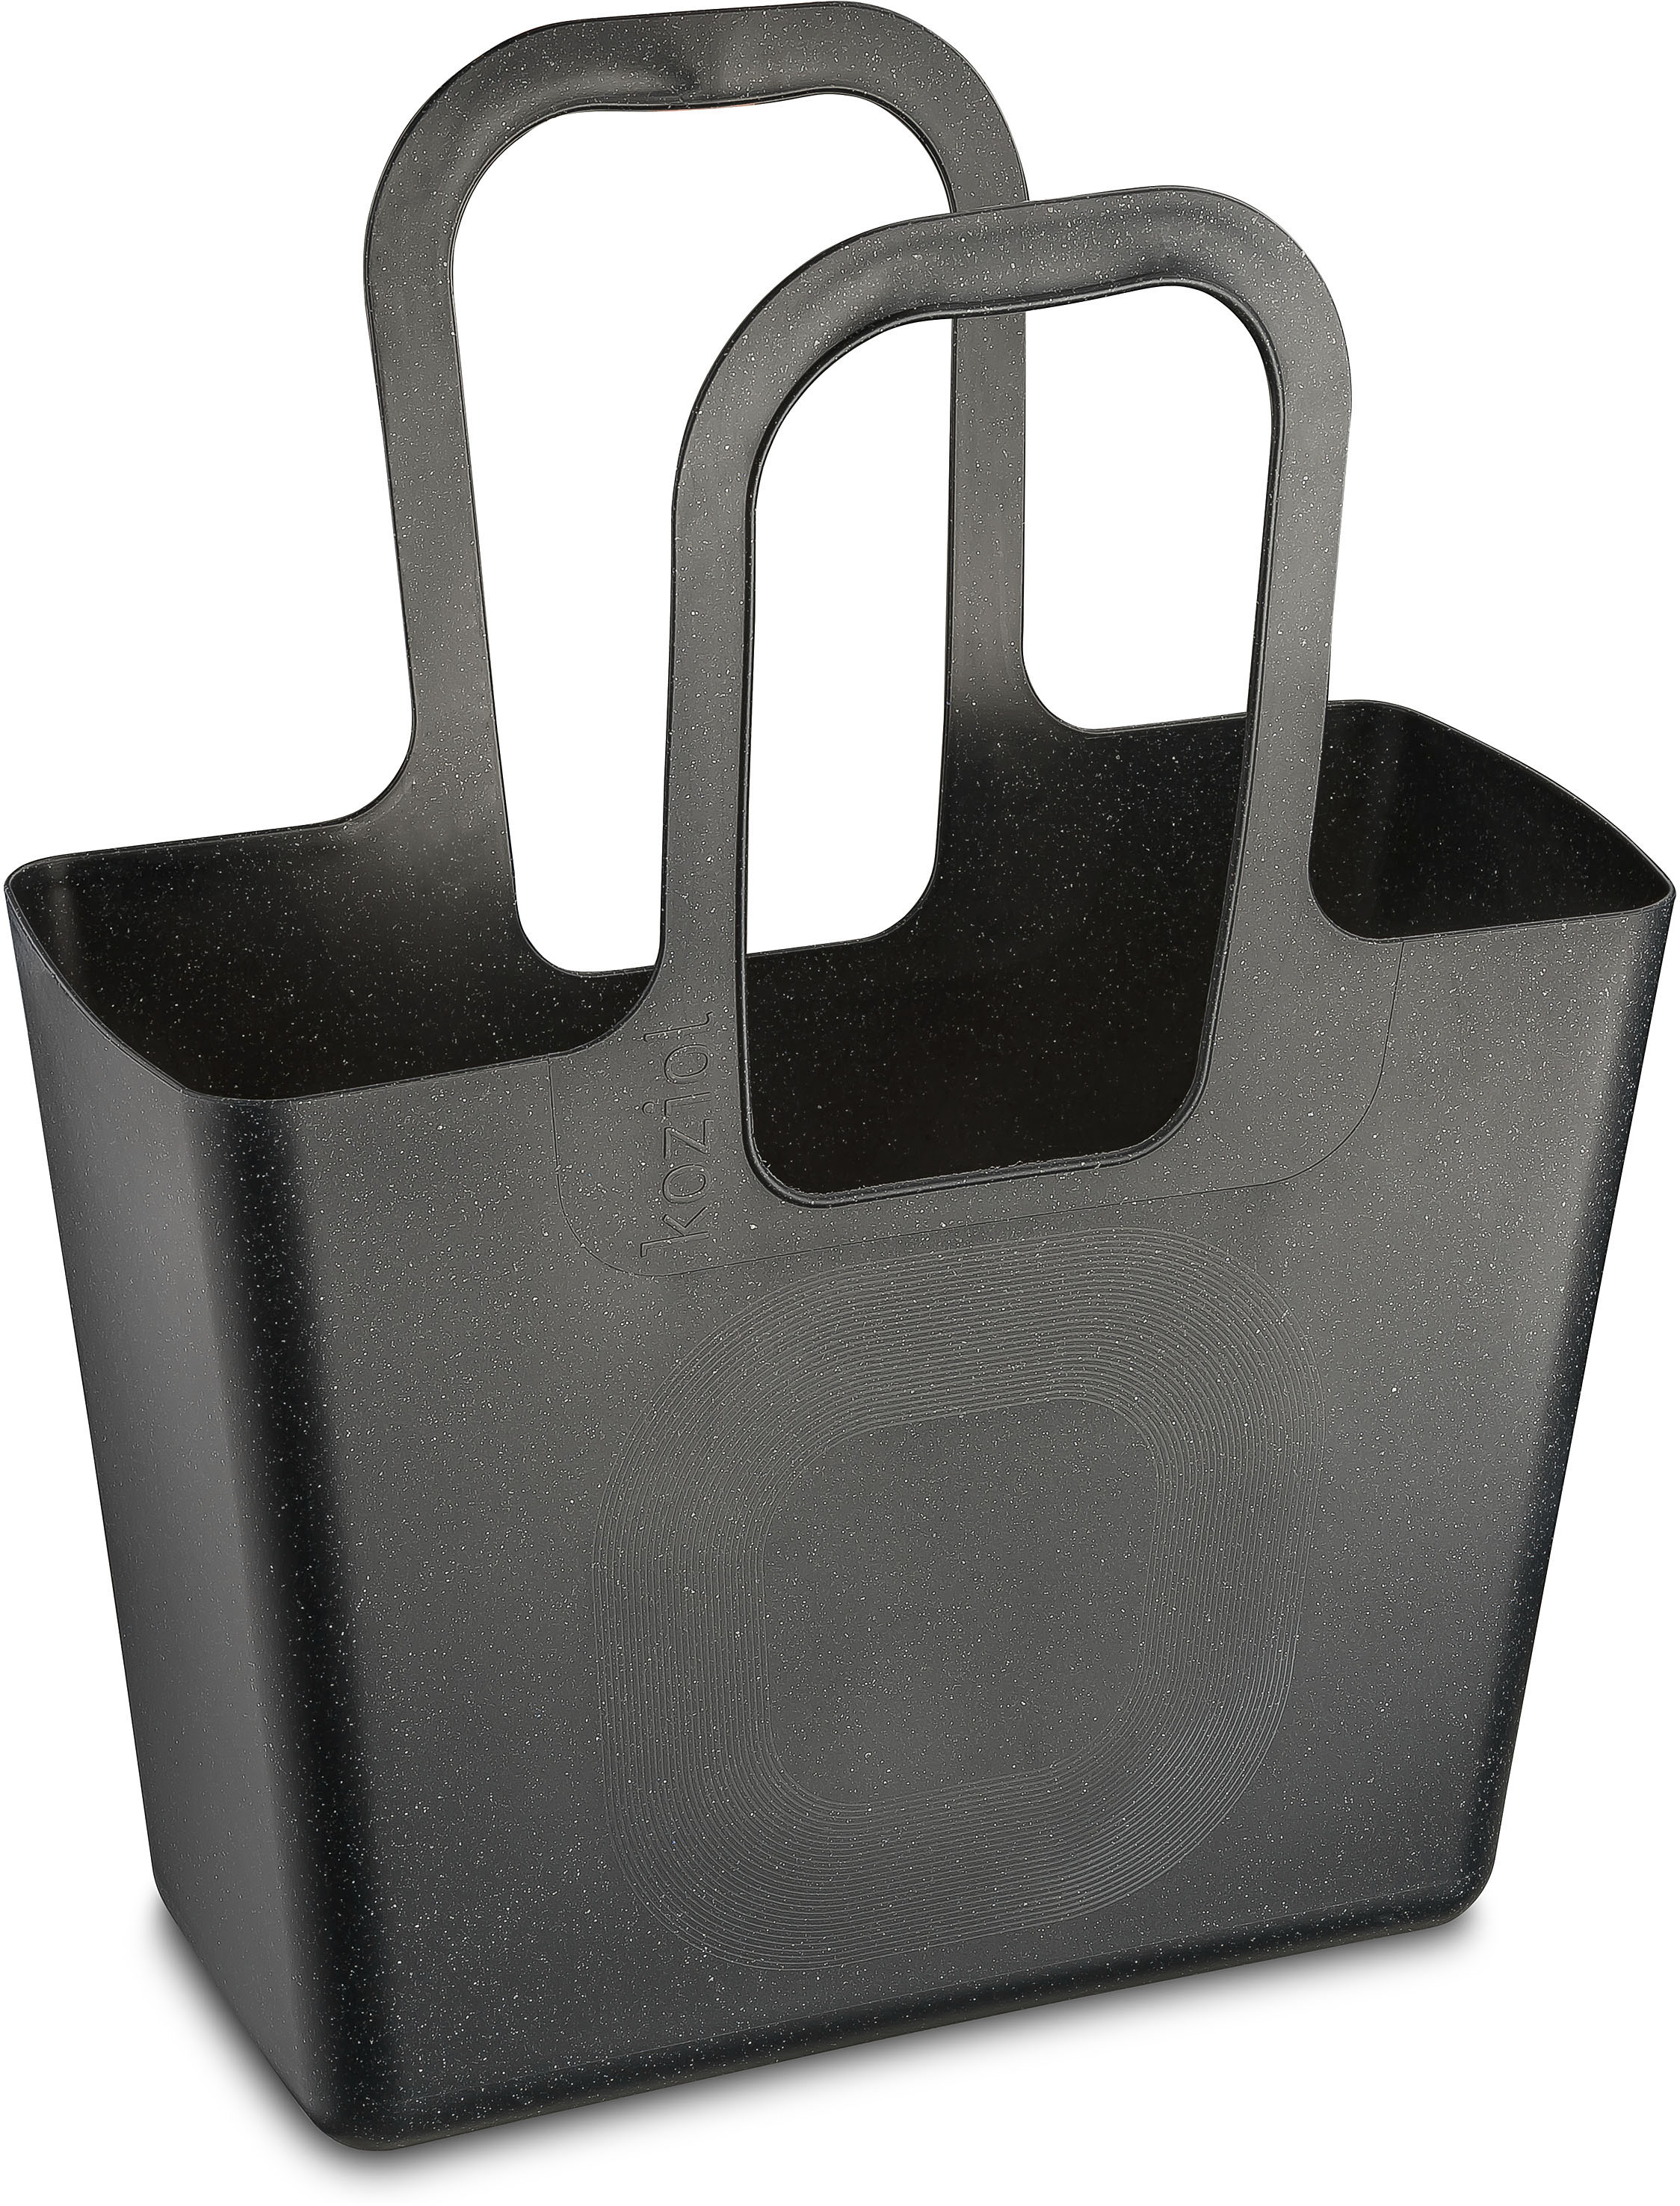 Koziol Einkaufstasche XL Coal 54 x 44 cm schwarz organisch recycelbar